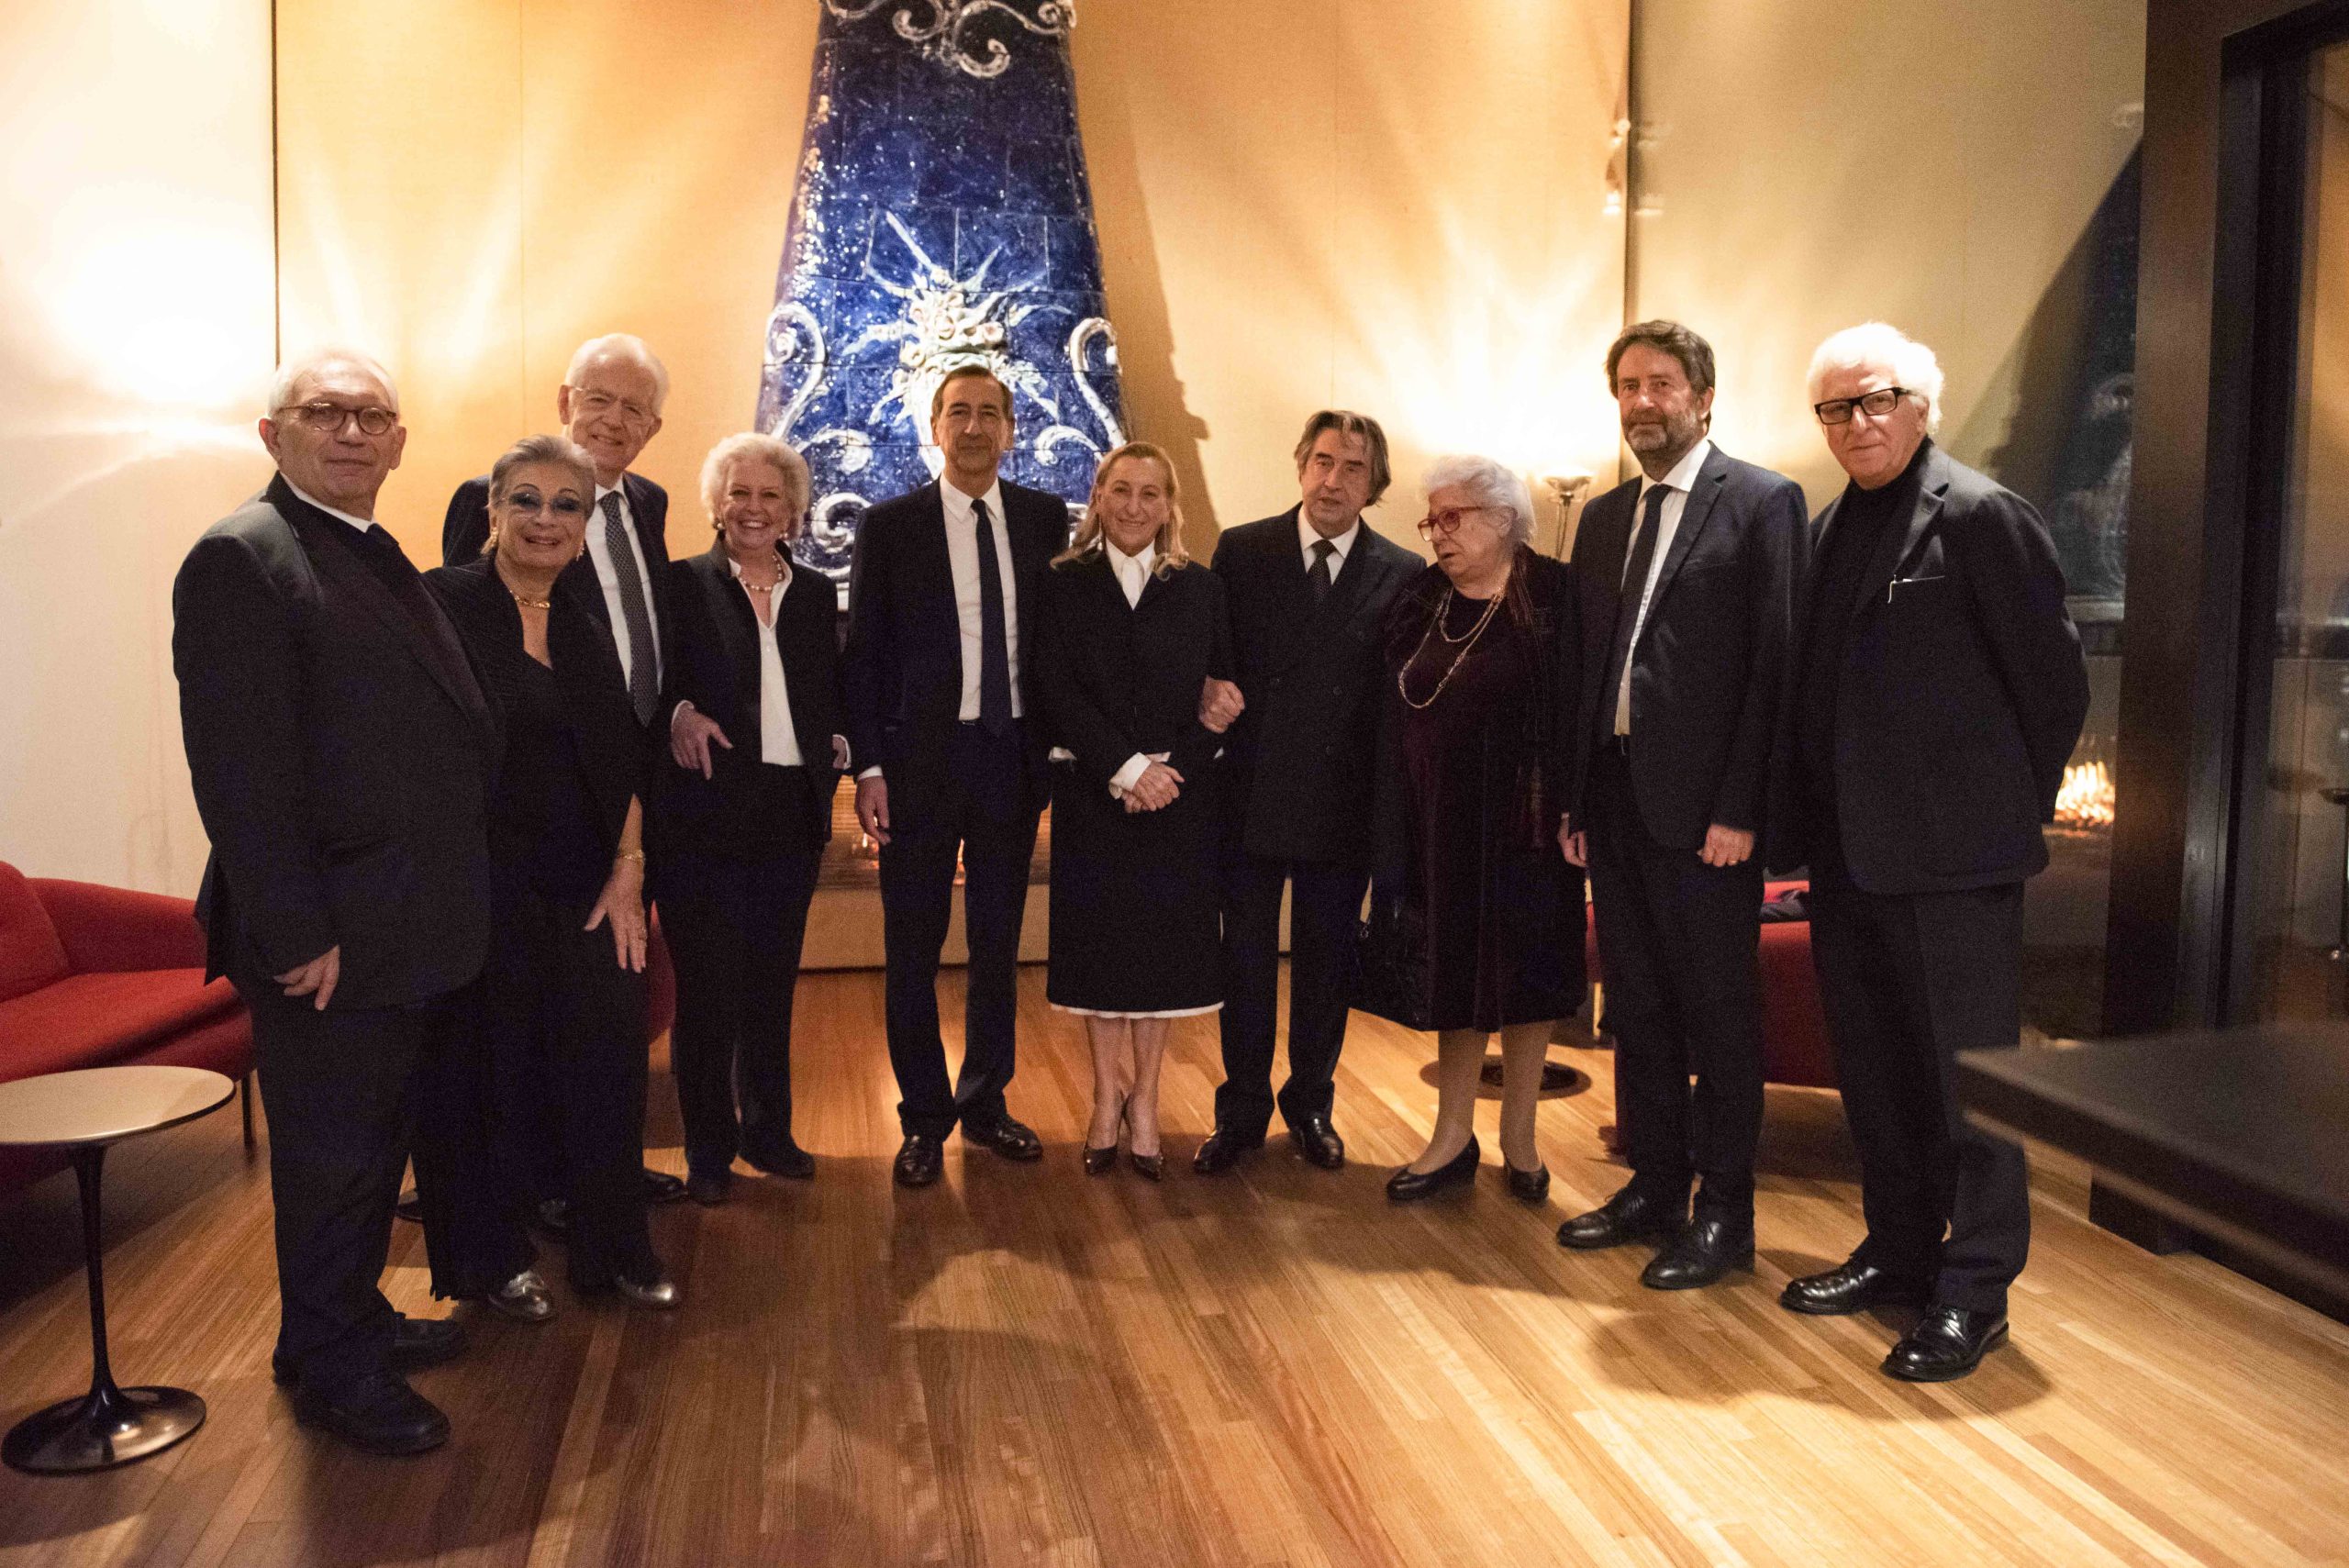 Fondazione Prada Final concert presented by Riccardo Muti